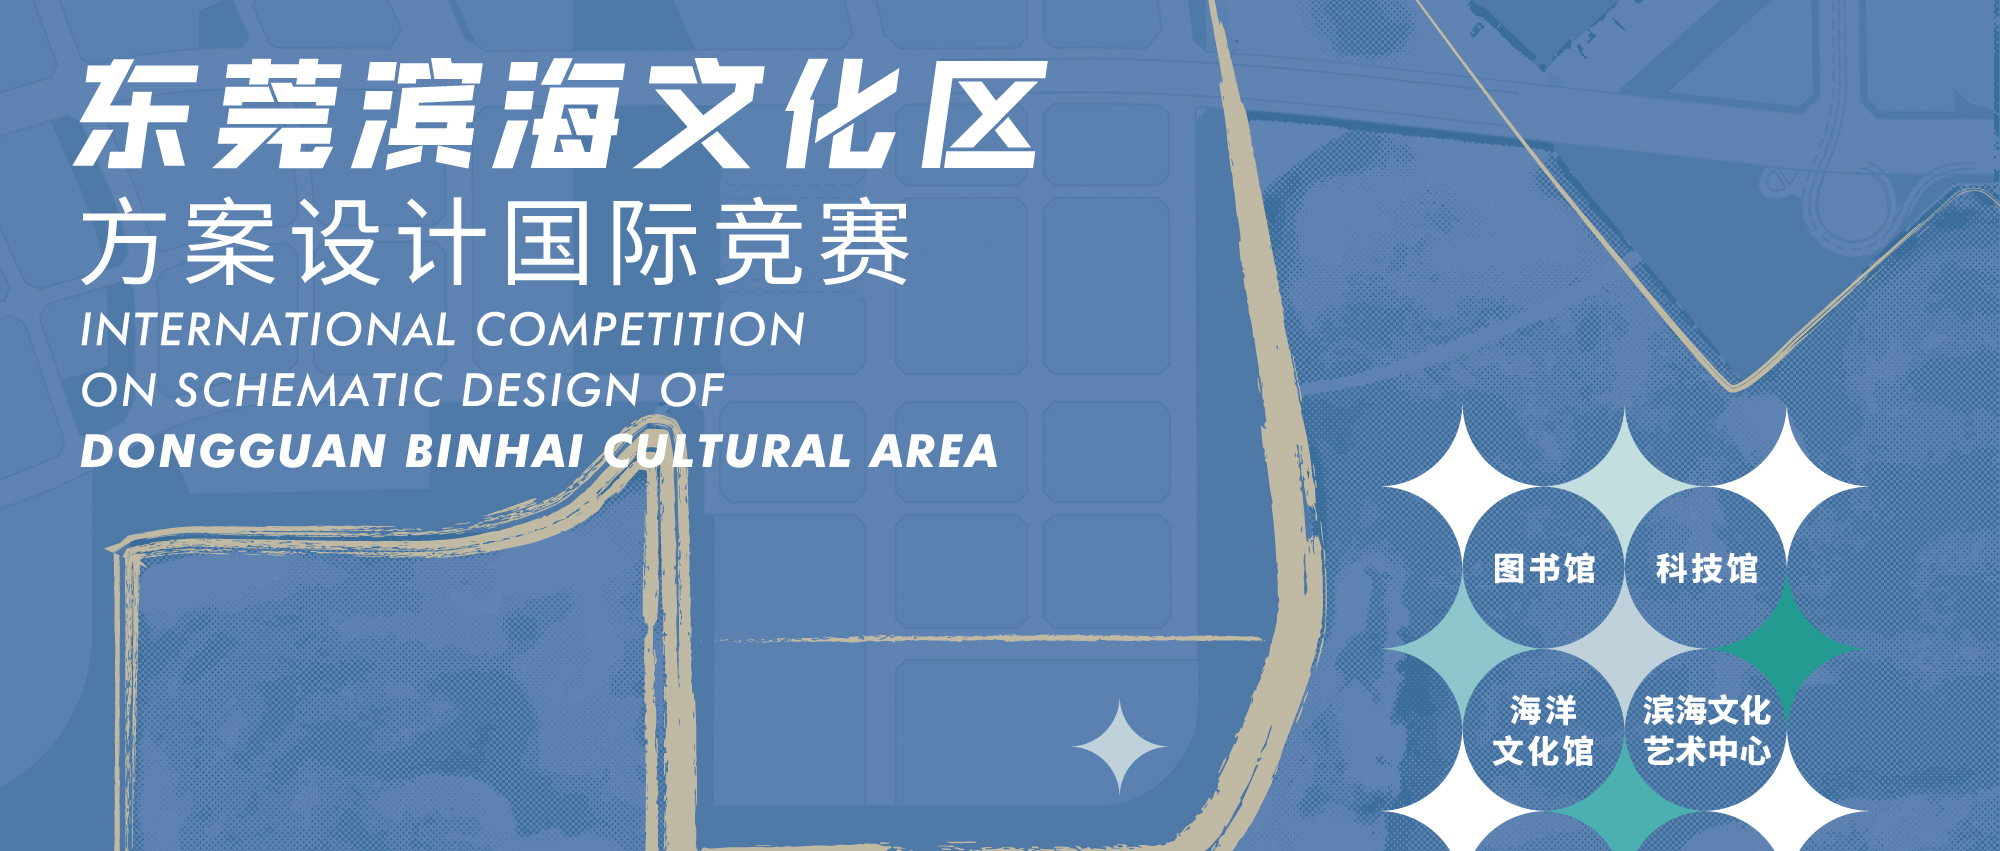 预公告 | 东莞滨海文化区方案设计国际竞赛-CNYISAI艺赛